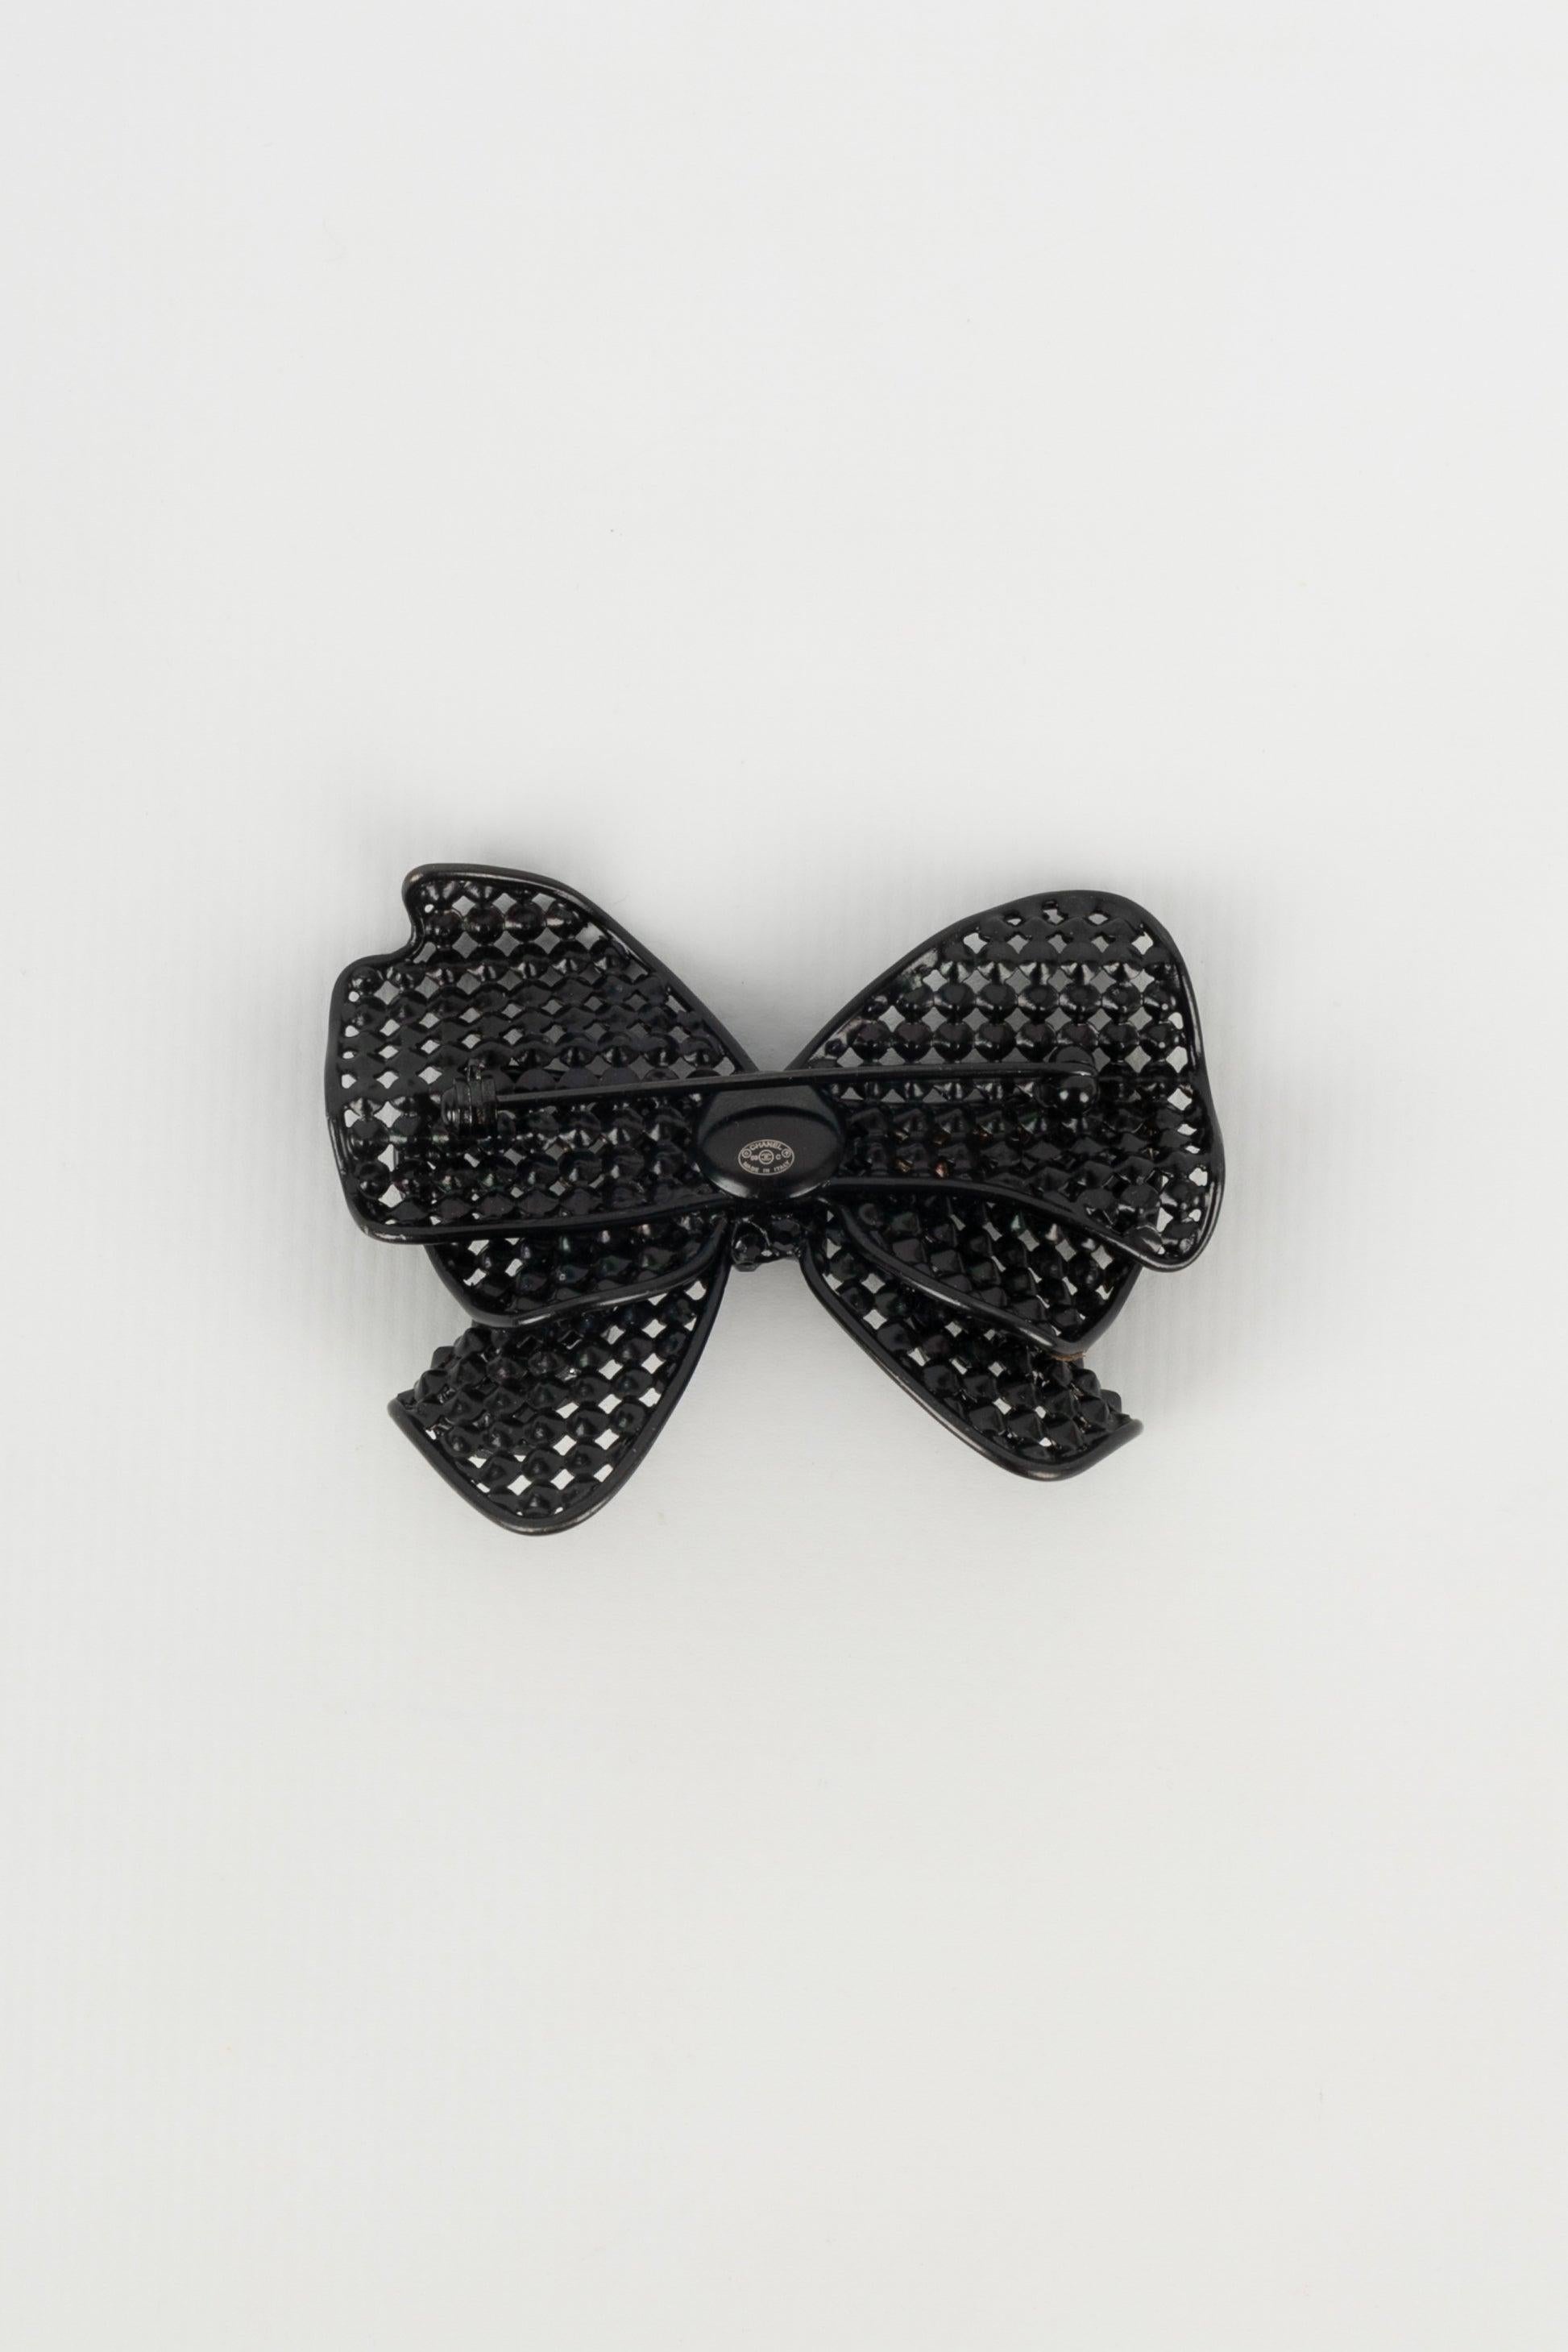 Chanel - (Made in Italy) Schwarze Metallbrosche, die eine mit schwarzen Strasssteinen verzierte Schleife darstellt. Cruise 2009 Collection.

Zusätzliche Informationen:
Zustand: Sehr guter Zustand
Abmessungen: Länge: 5.5 cm
Zeitraum: 21.